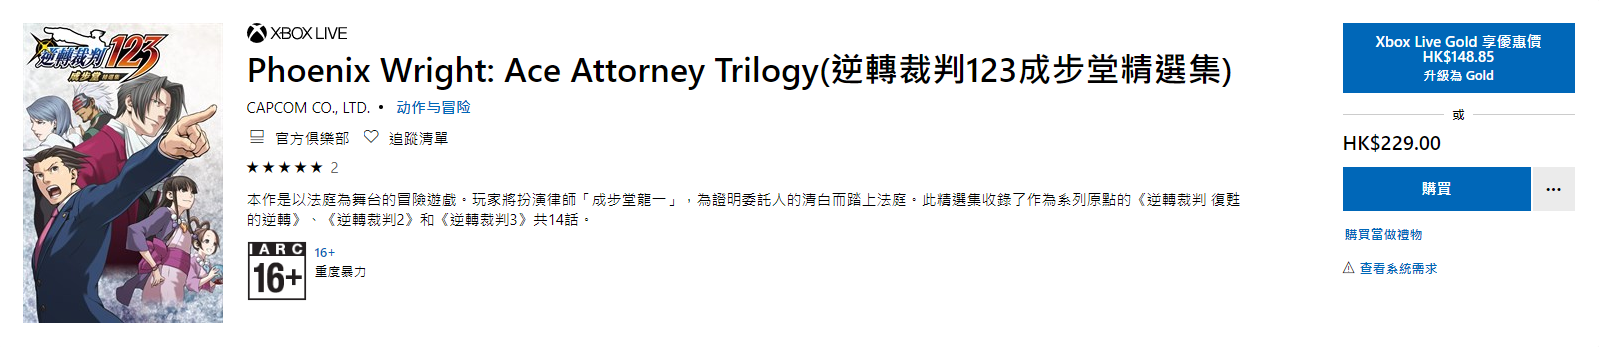 16点准时更新 《逆转裁判123》官方中文补丁现已发布